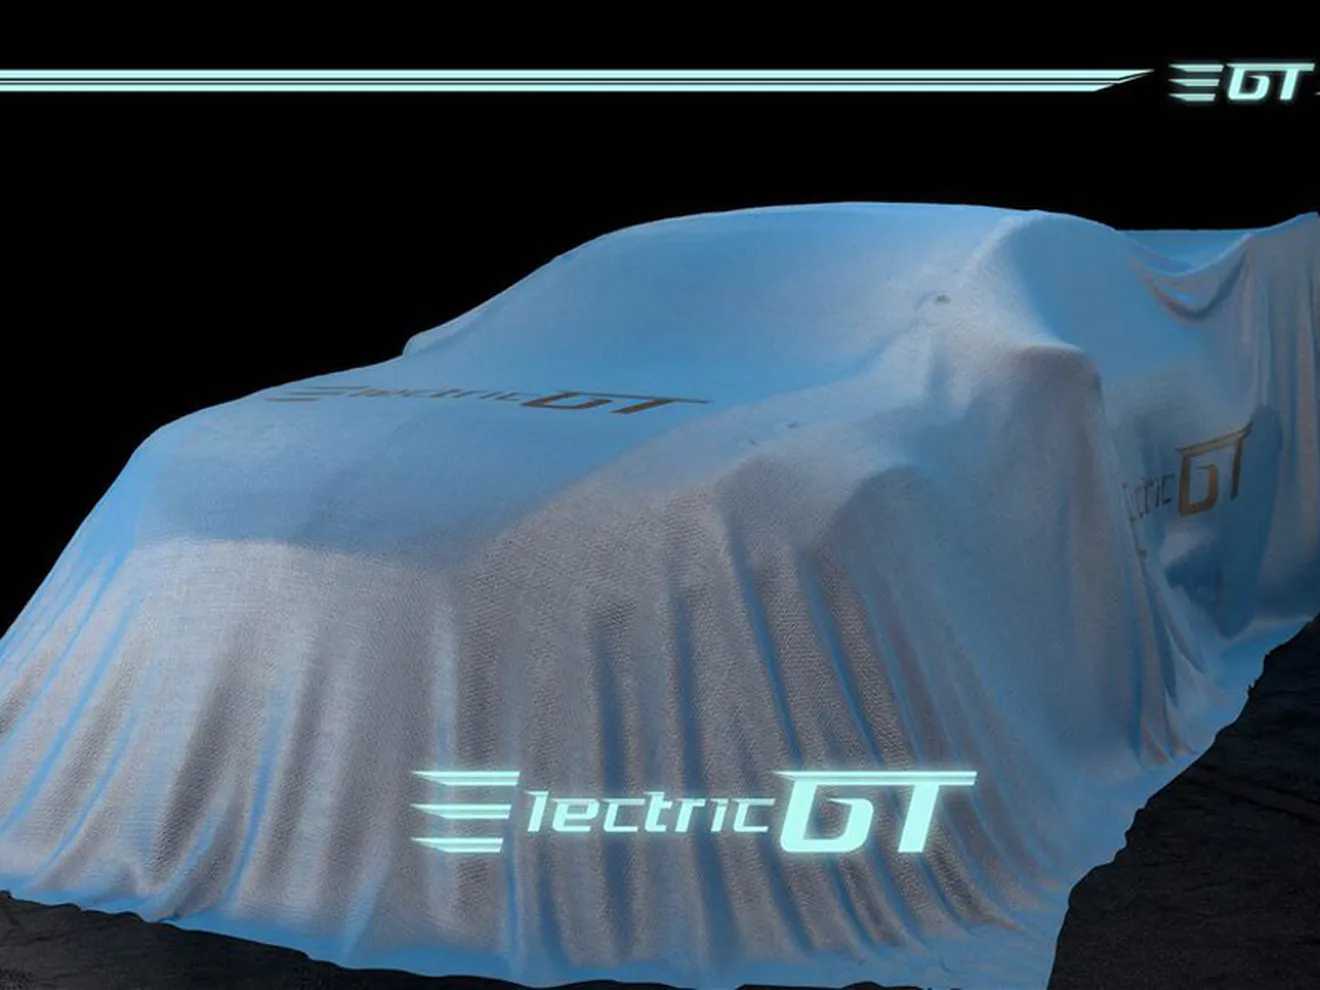 Nace Electric GT, el nuevo campeonato de coches eléctricos para 2017